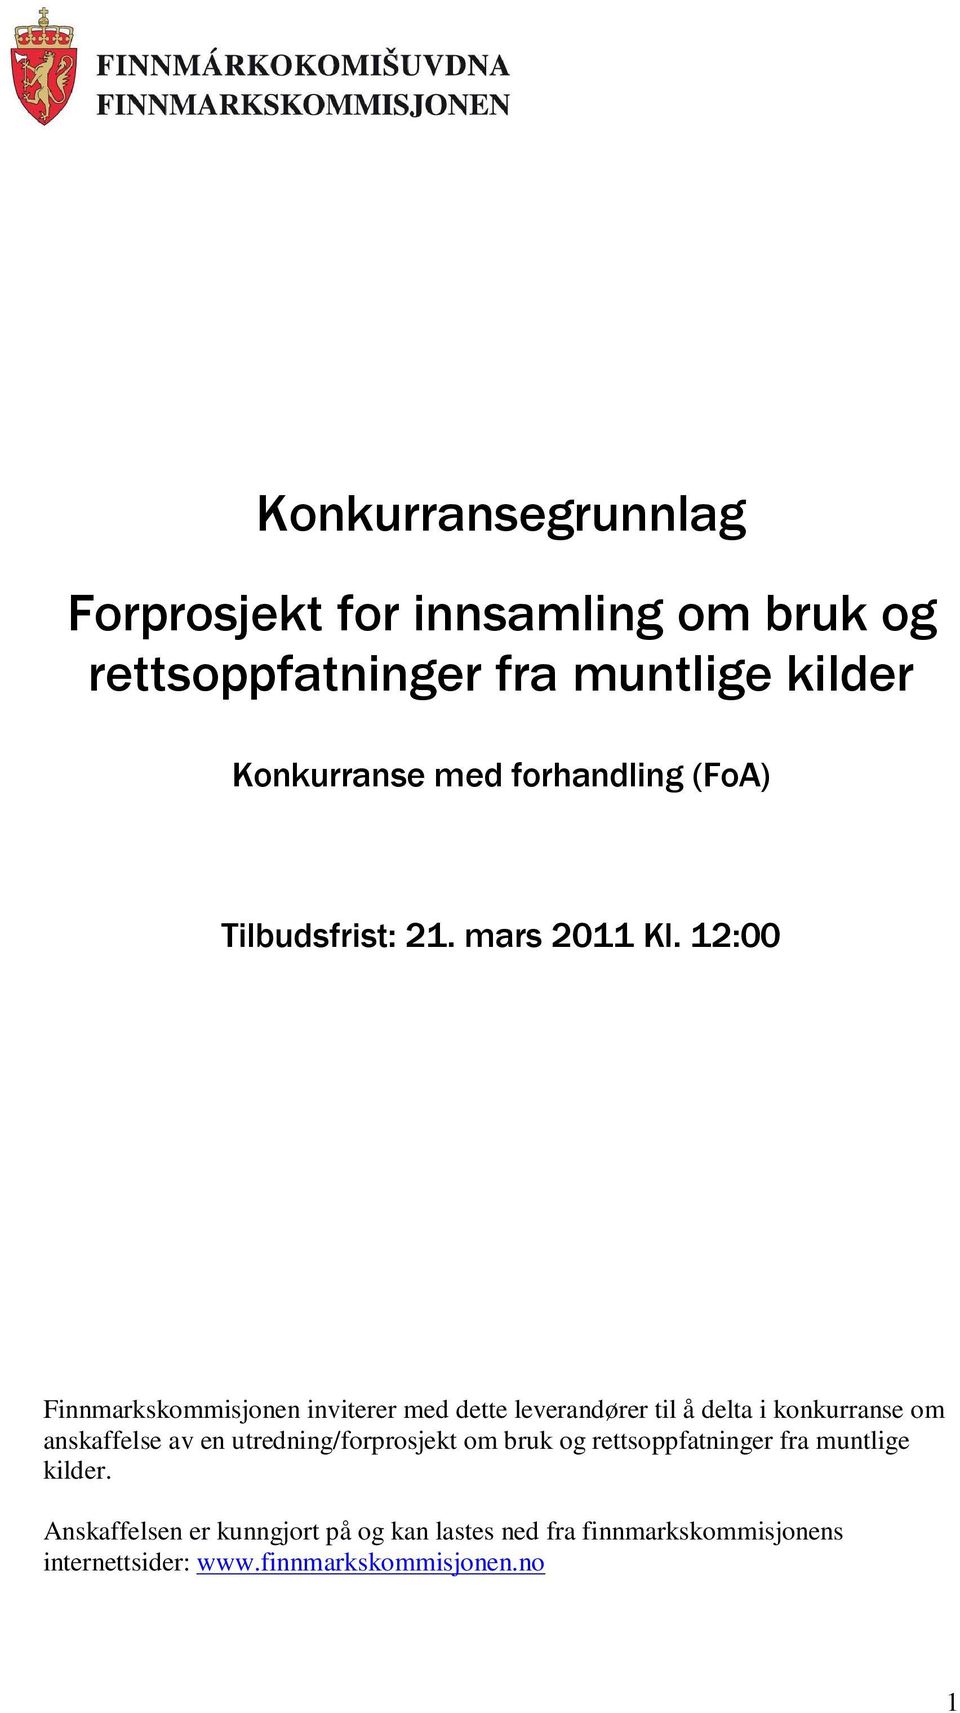 12:00 Finnmarkskommisjonen inviterer med dette leverandører til å delta i konkurranse om anskaffelse av en